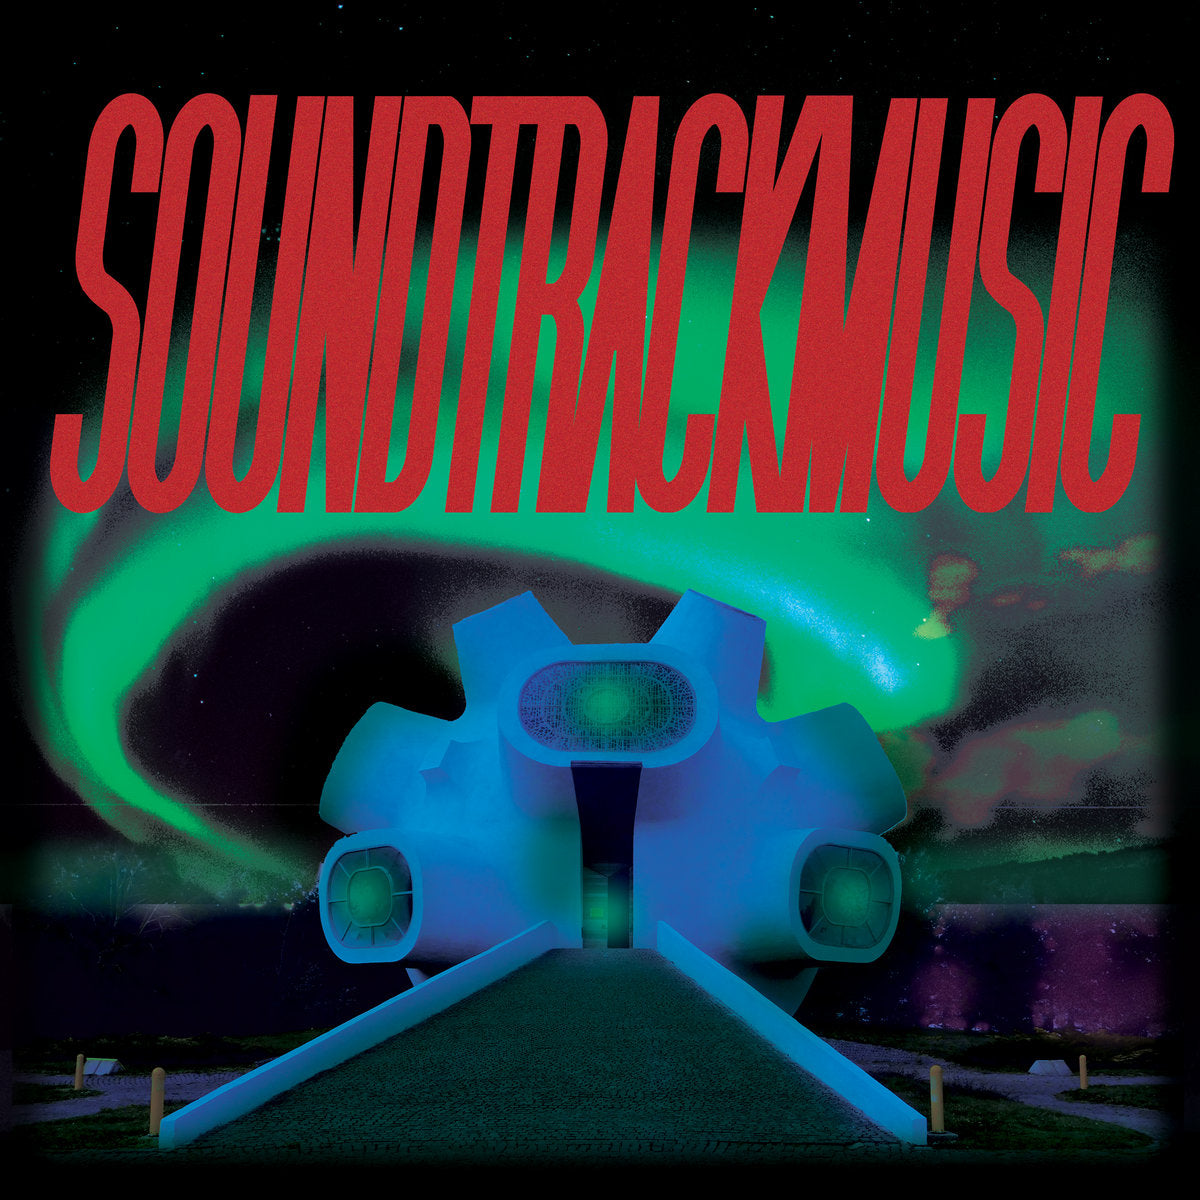 SOUNDTRACKMUSIC - "SOUNDTRACKMUSIC" LP